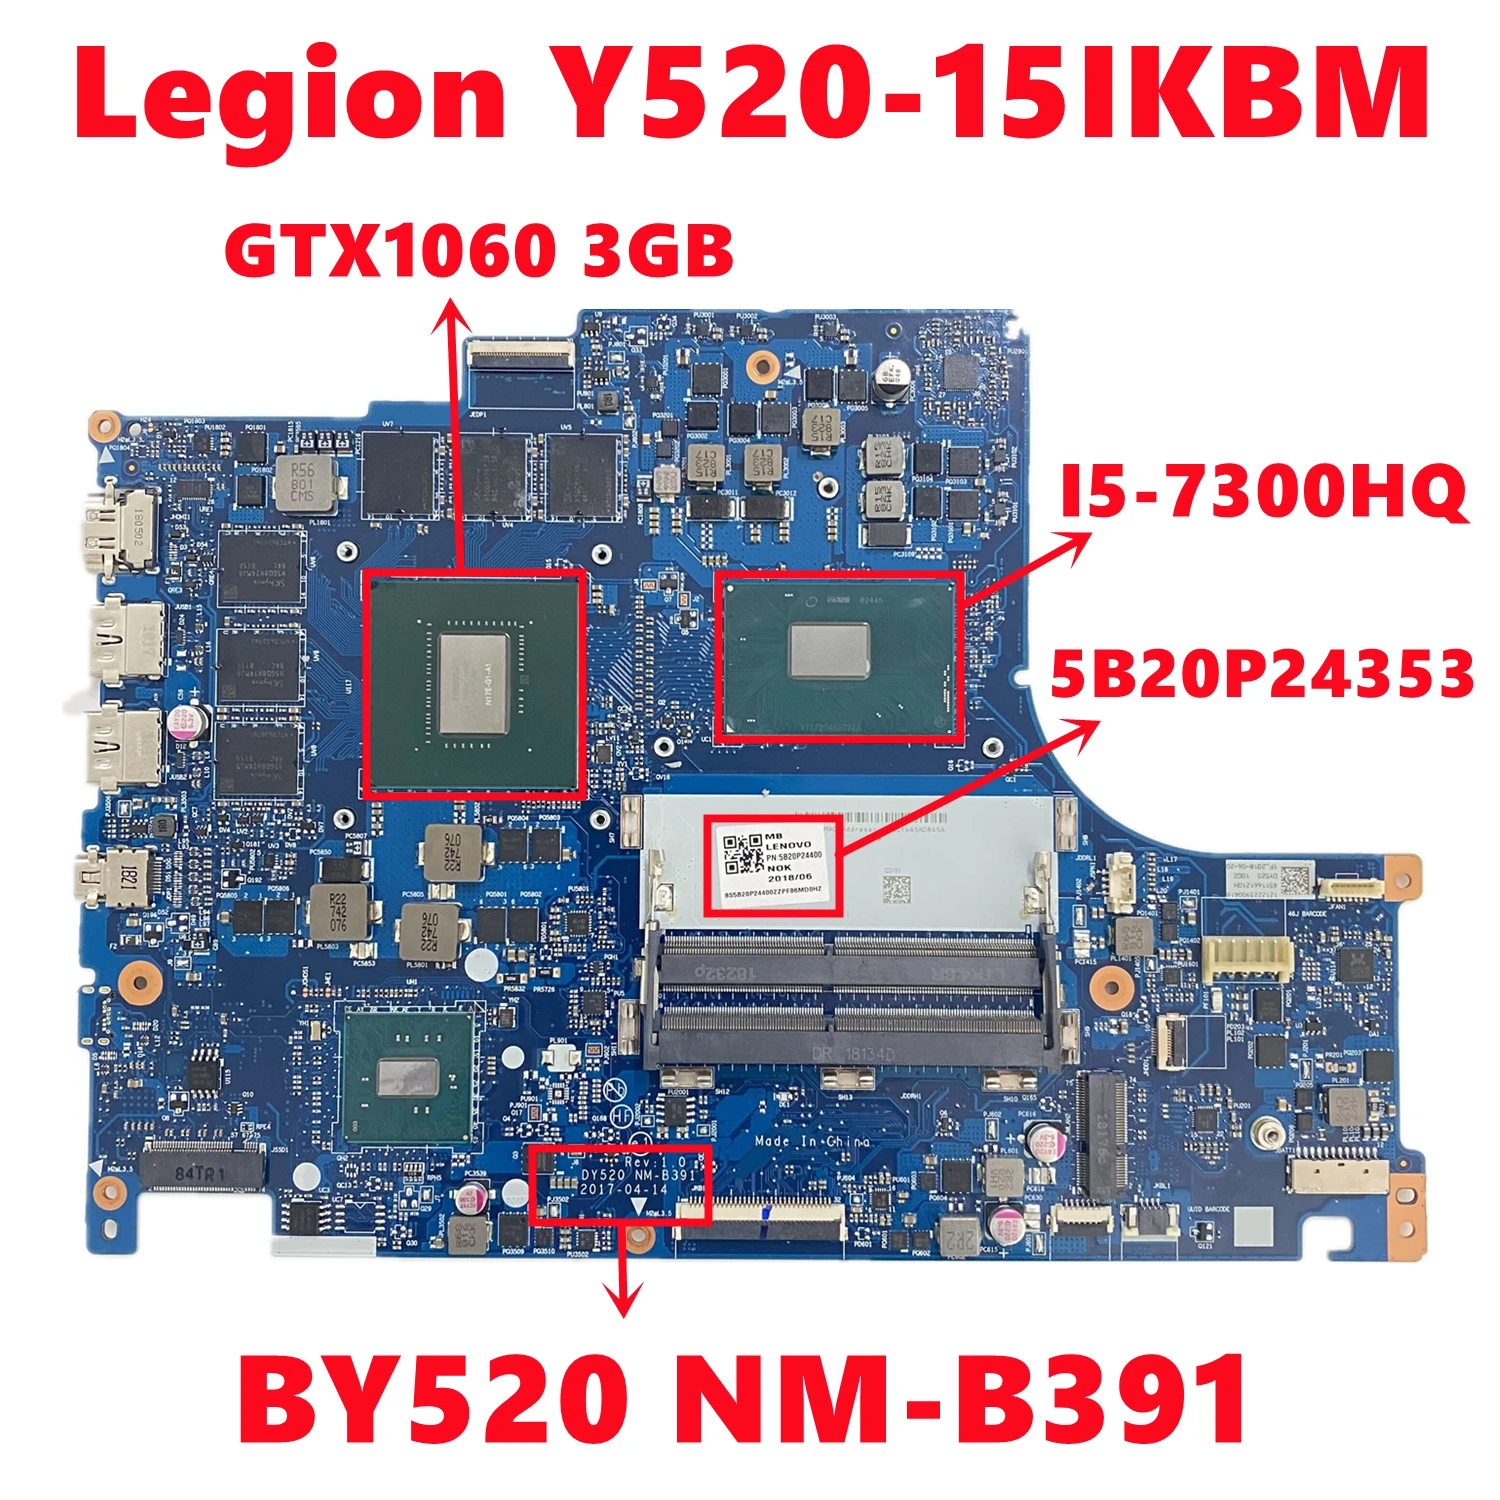 

FRU:5B20P24353 For Lenovo Legion Y520-15IKBM Laptop Motherboard BY520 NM-B391 With i5-7300HQ CPU N17E-G1-A1 3GB-GPU 100% Test OK